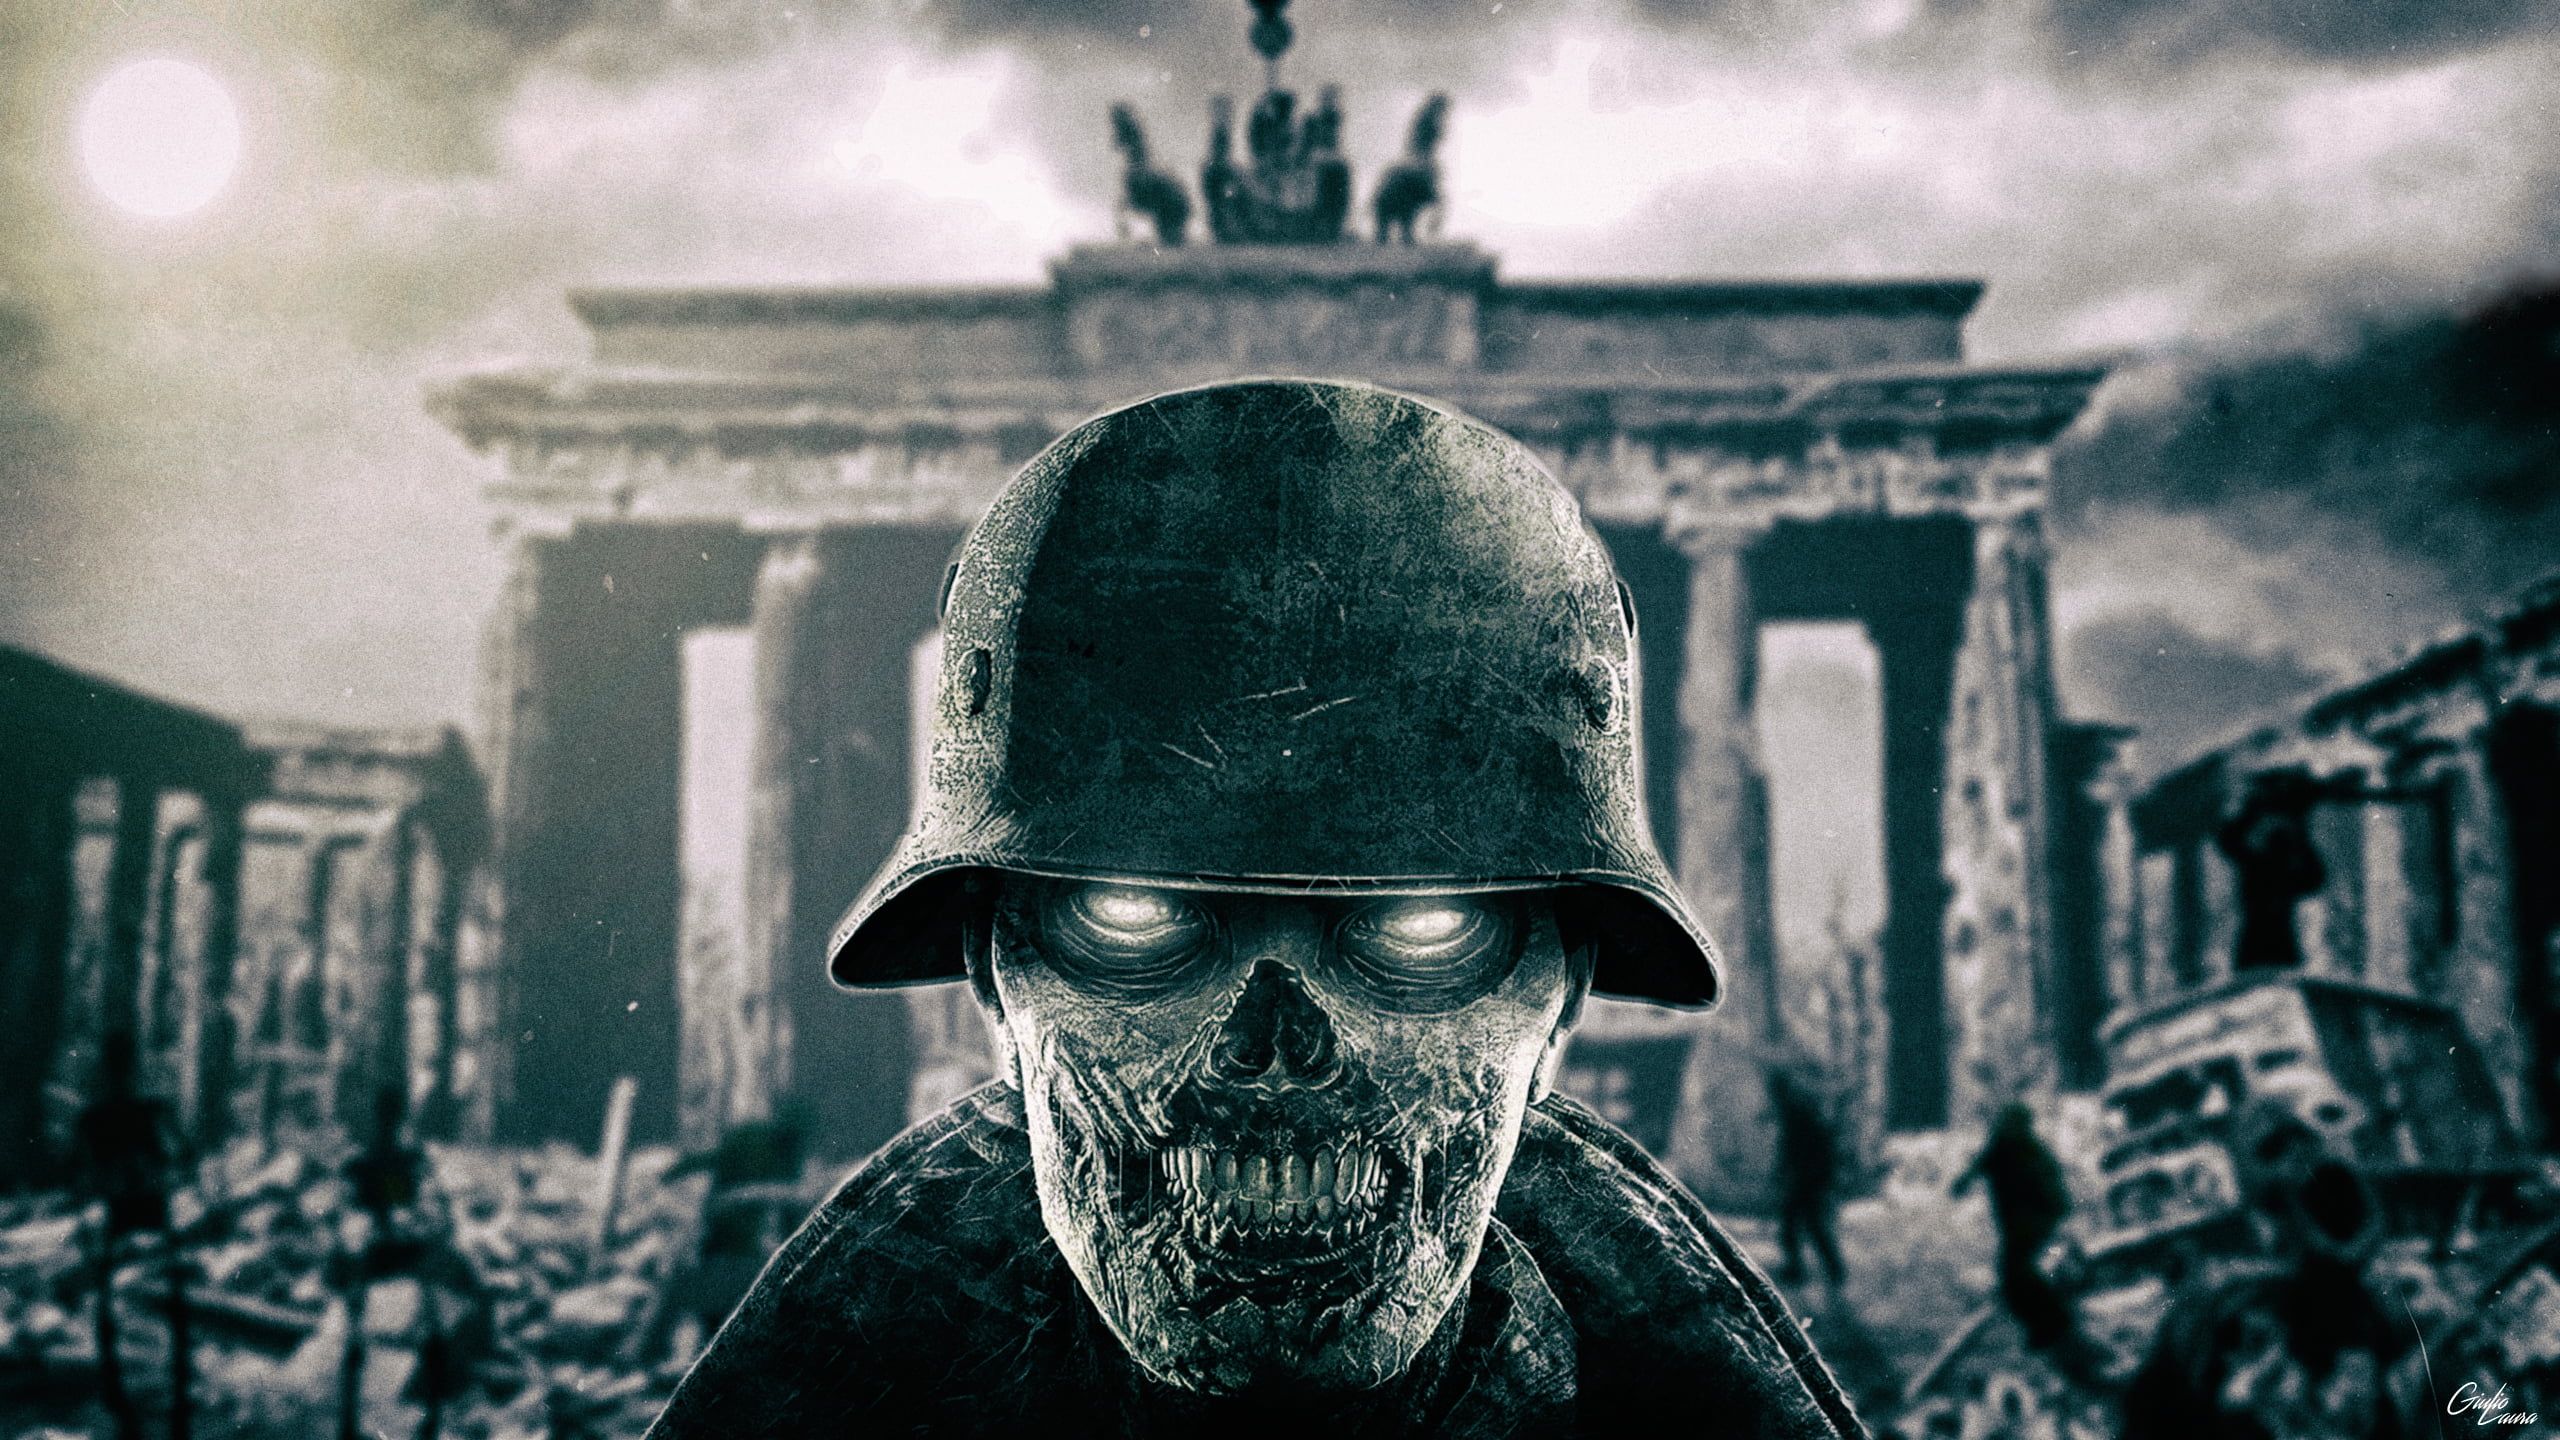 Skull digital wallpaper, zombie army trilogy, World War II, Berlin